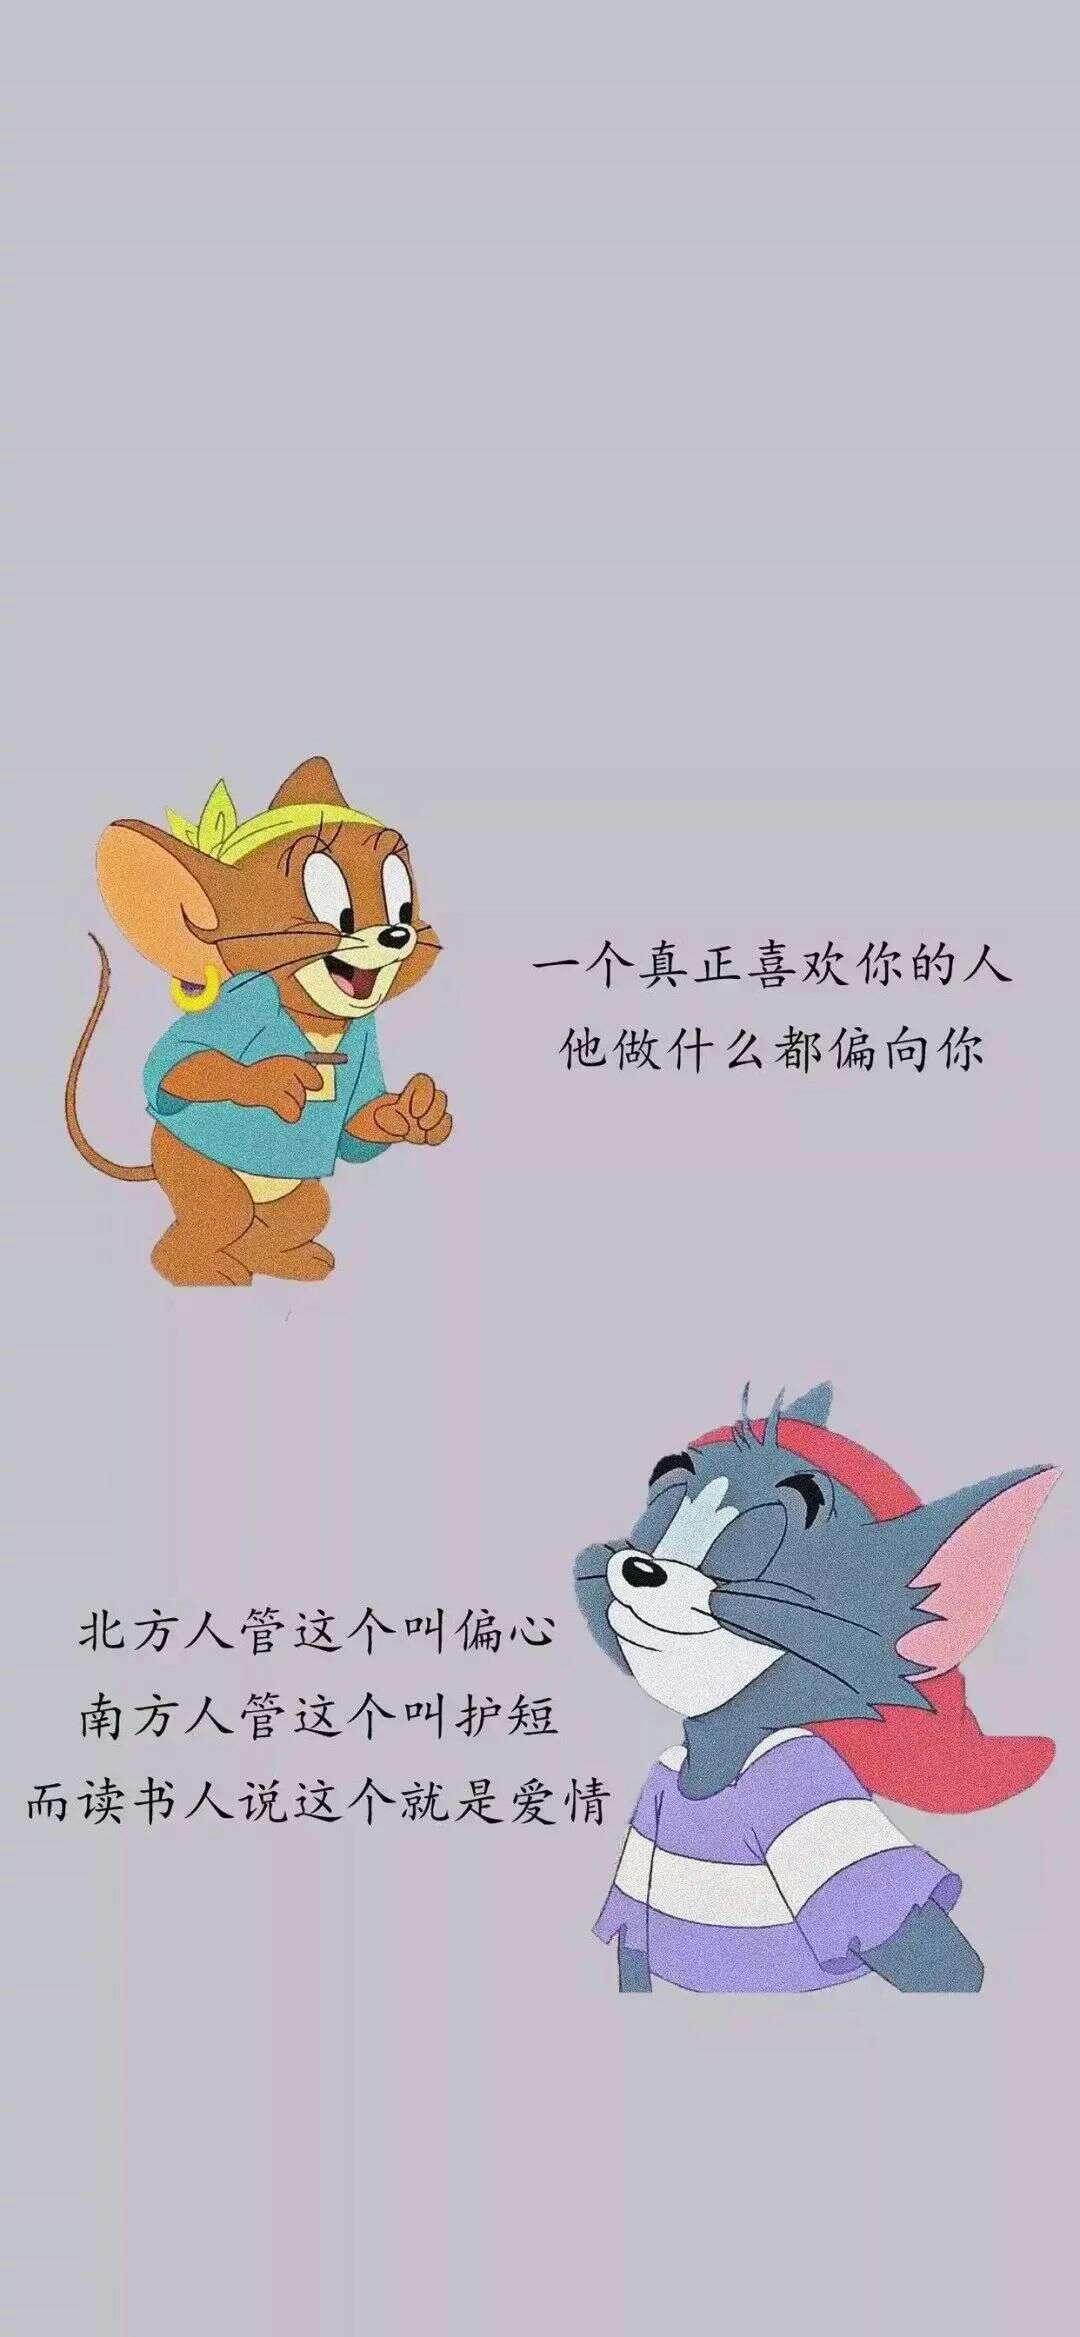 猫和老鼠语录壁纸图片